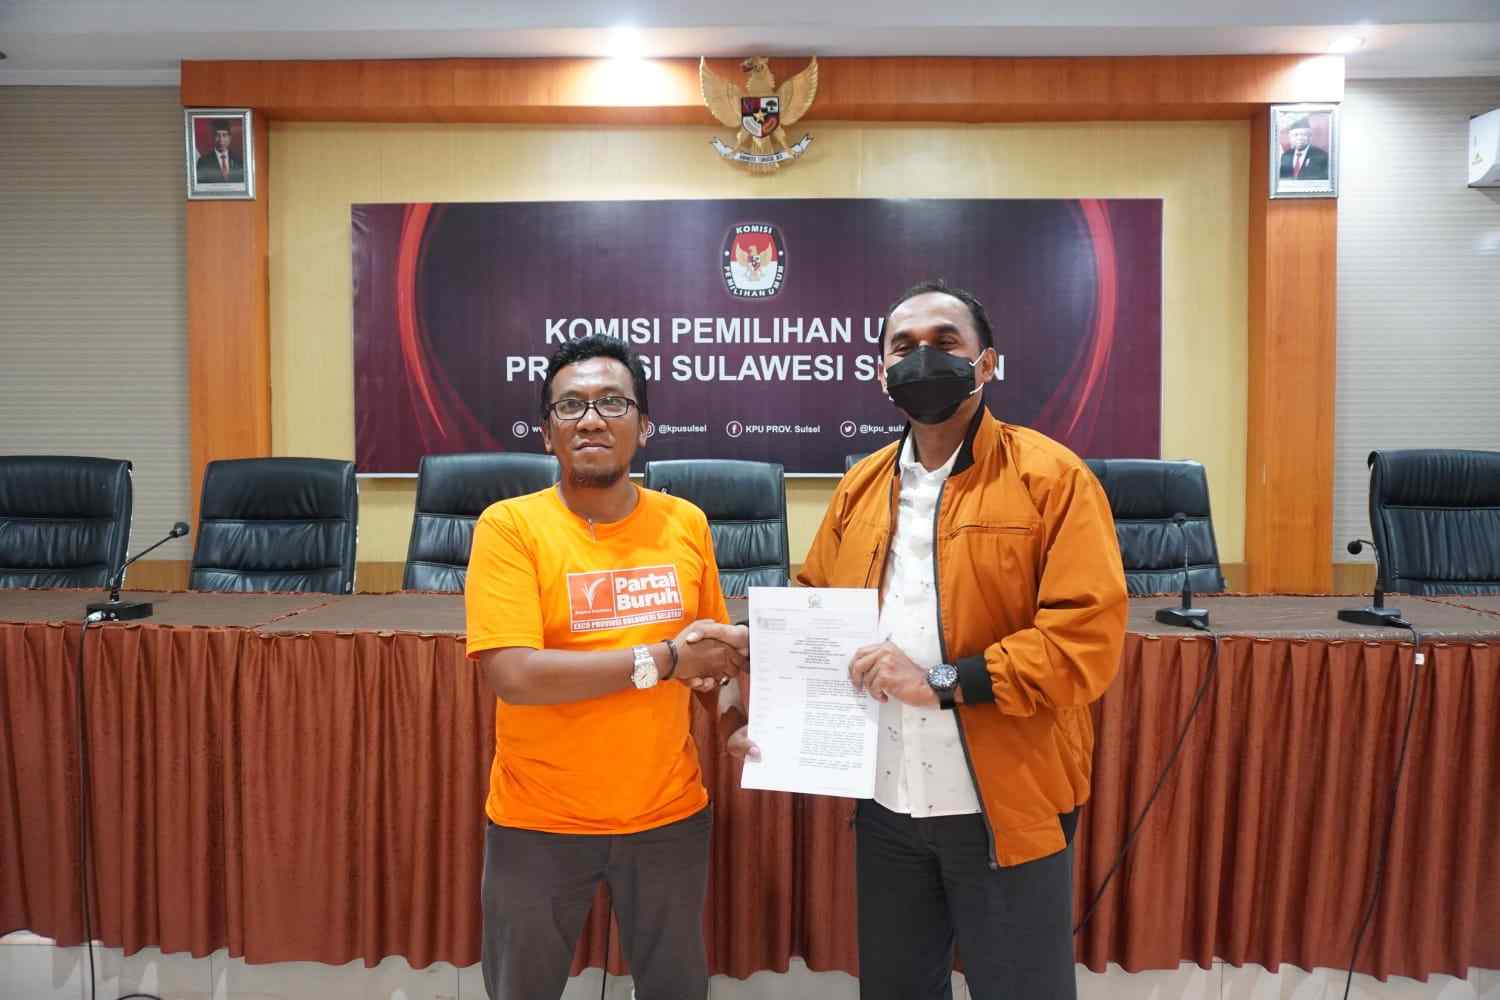 Partai Buruh Exco Sulawesi Selatan Kunjungi Komisioner KPU Sulsel